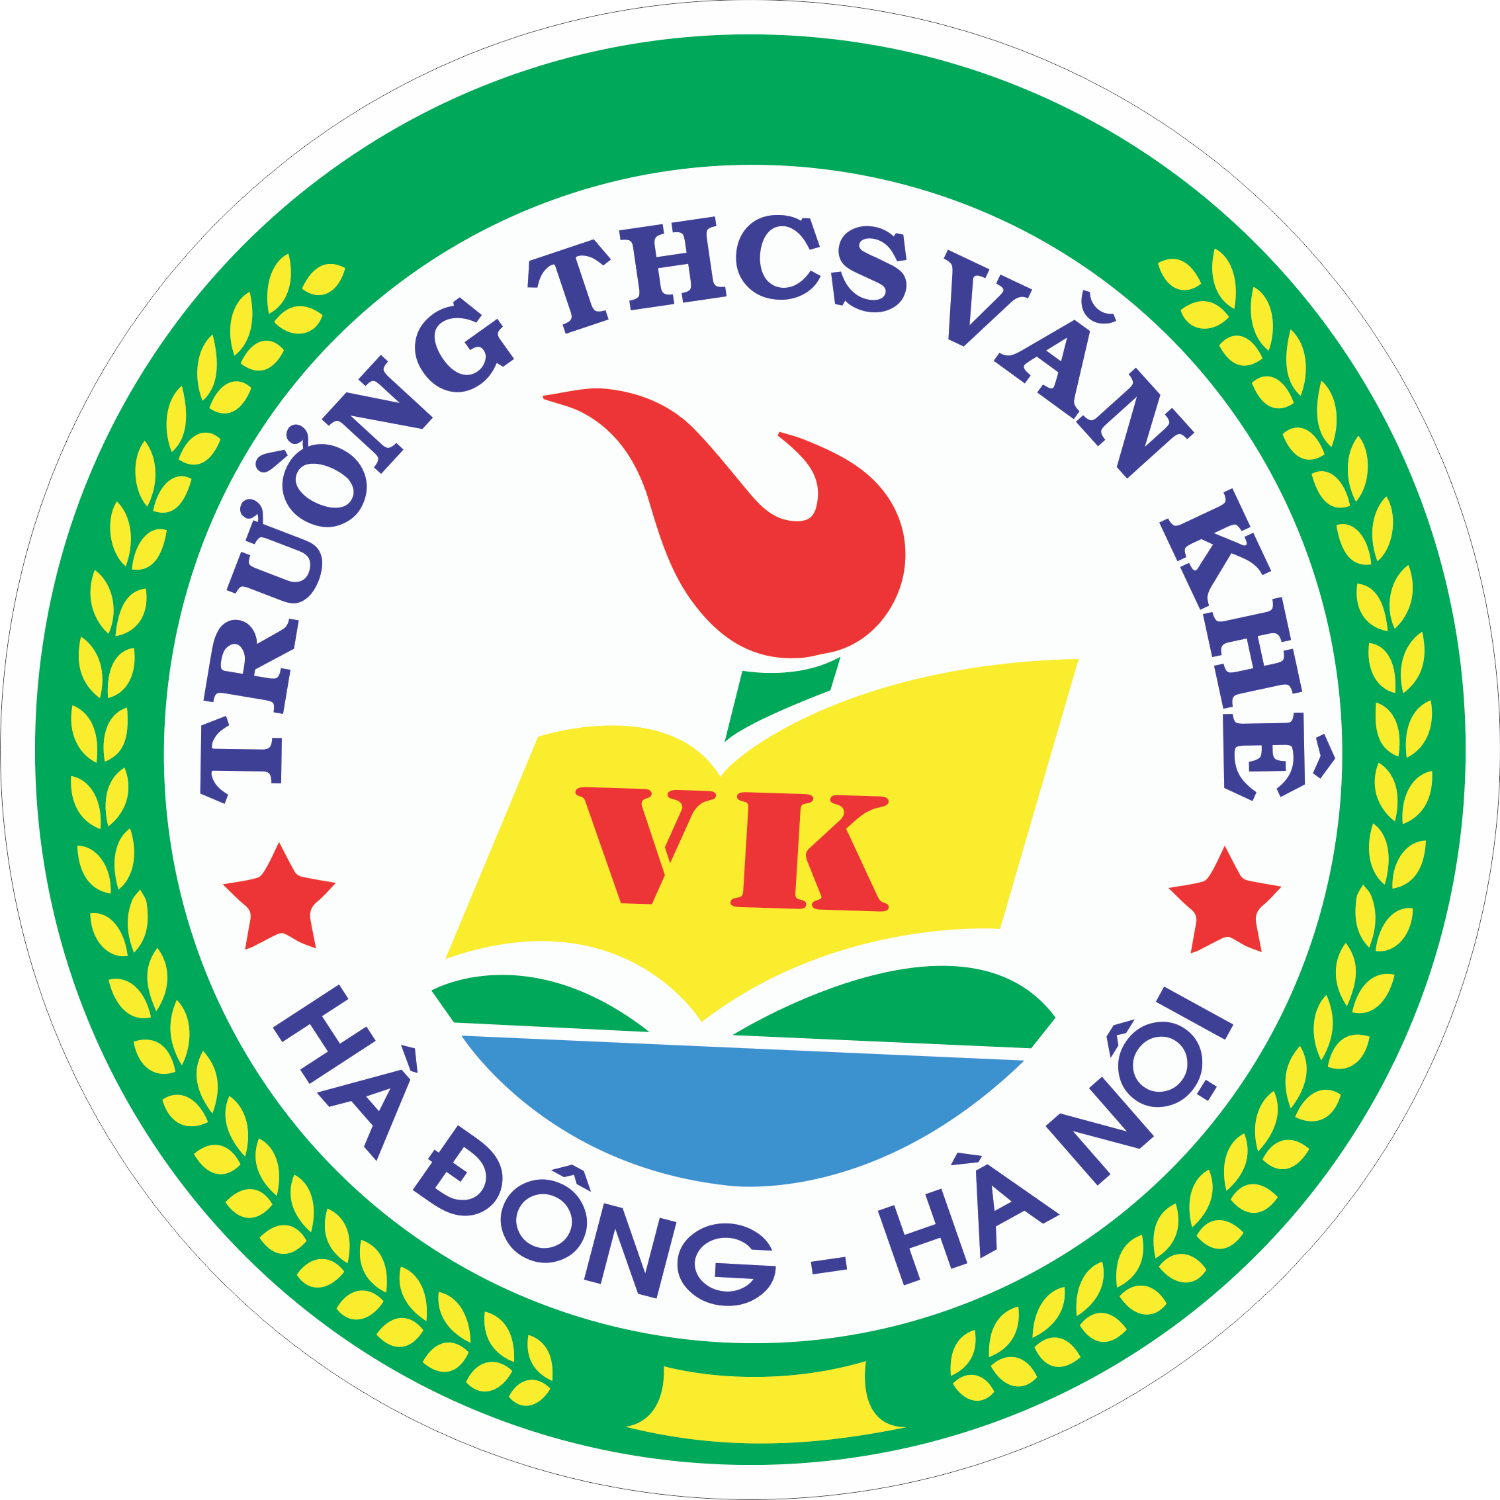 Trường THCS Văn Khê tham gia hội thi "Giáo viên dạy giỏi cấp quận" Năm học 2016 - 2017